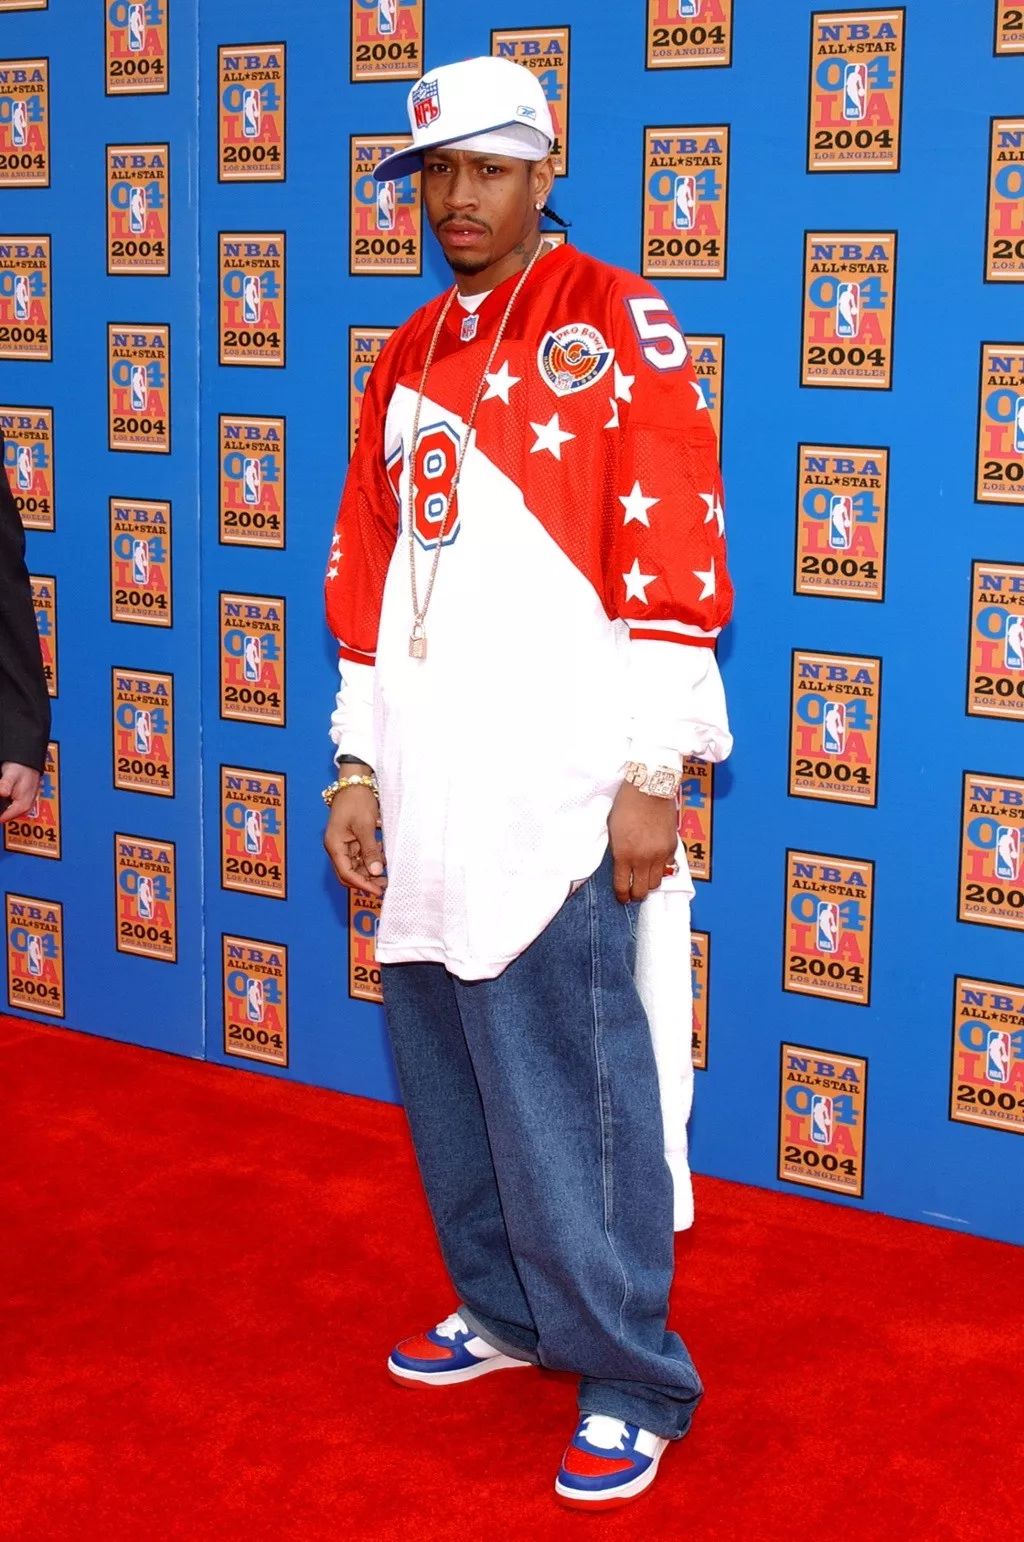 艾弗森是当年 nba 嘻哈风的代表曾经,nba 球员的穿着都肥大无比,尤其